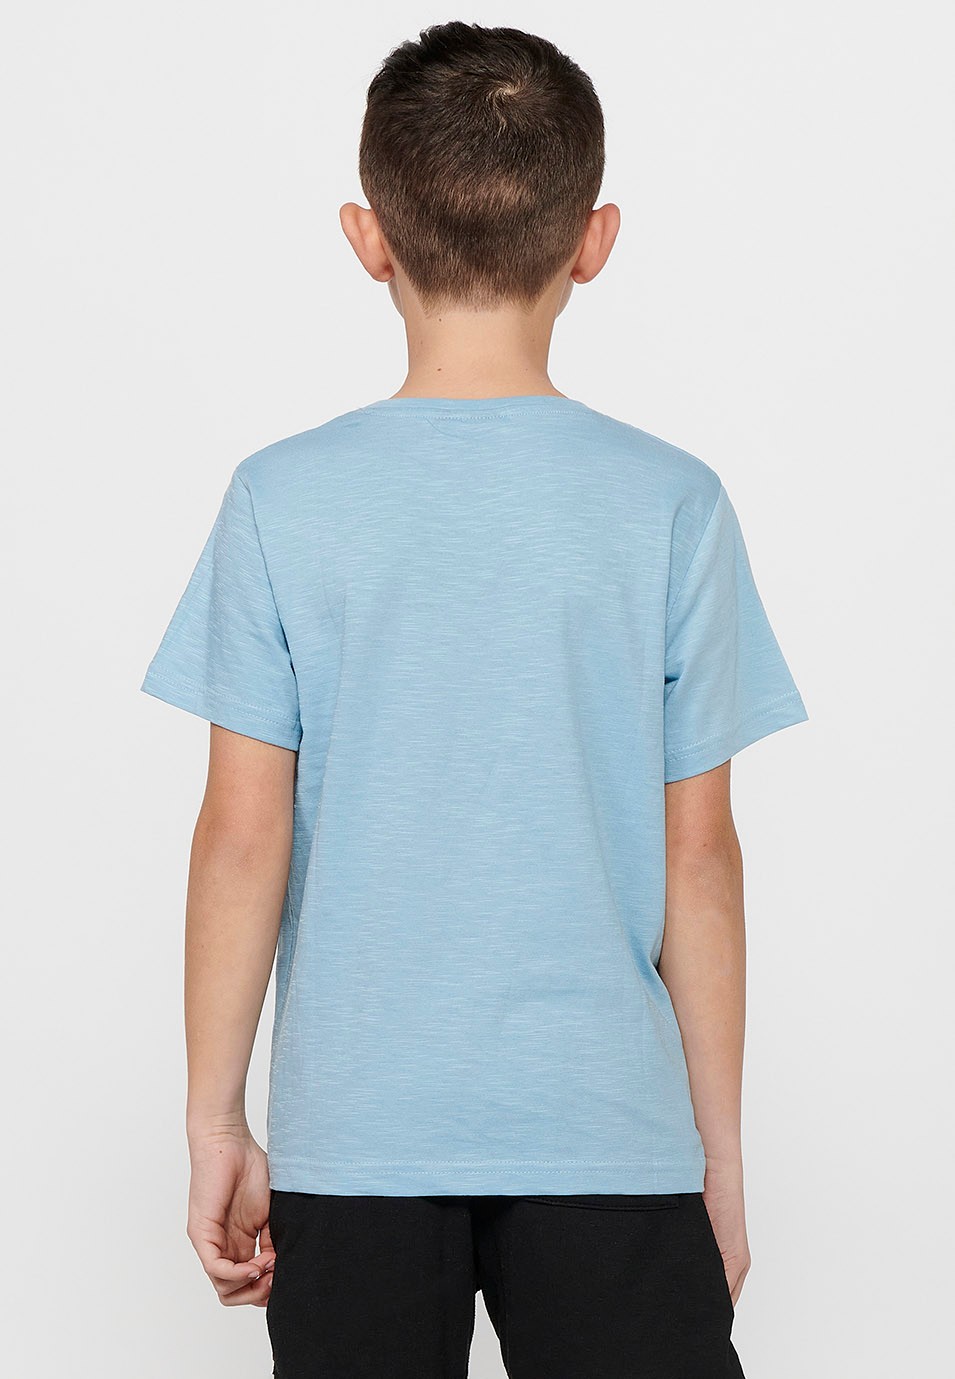 Camiseta de manga corta de Algodón y cuello redondo. Estampado delantero Color Azul celeste para Niño 5